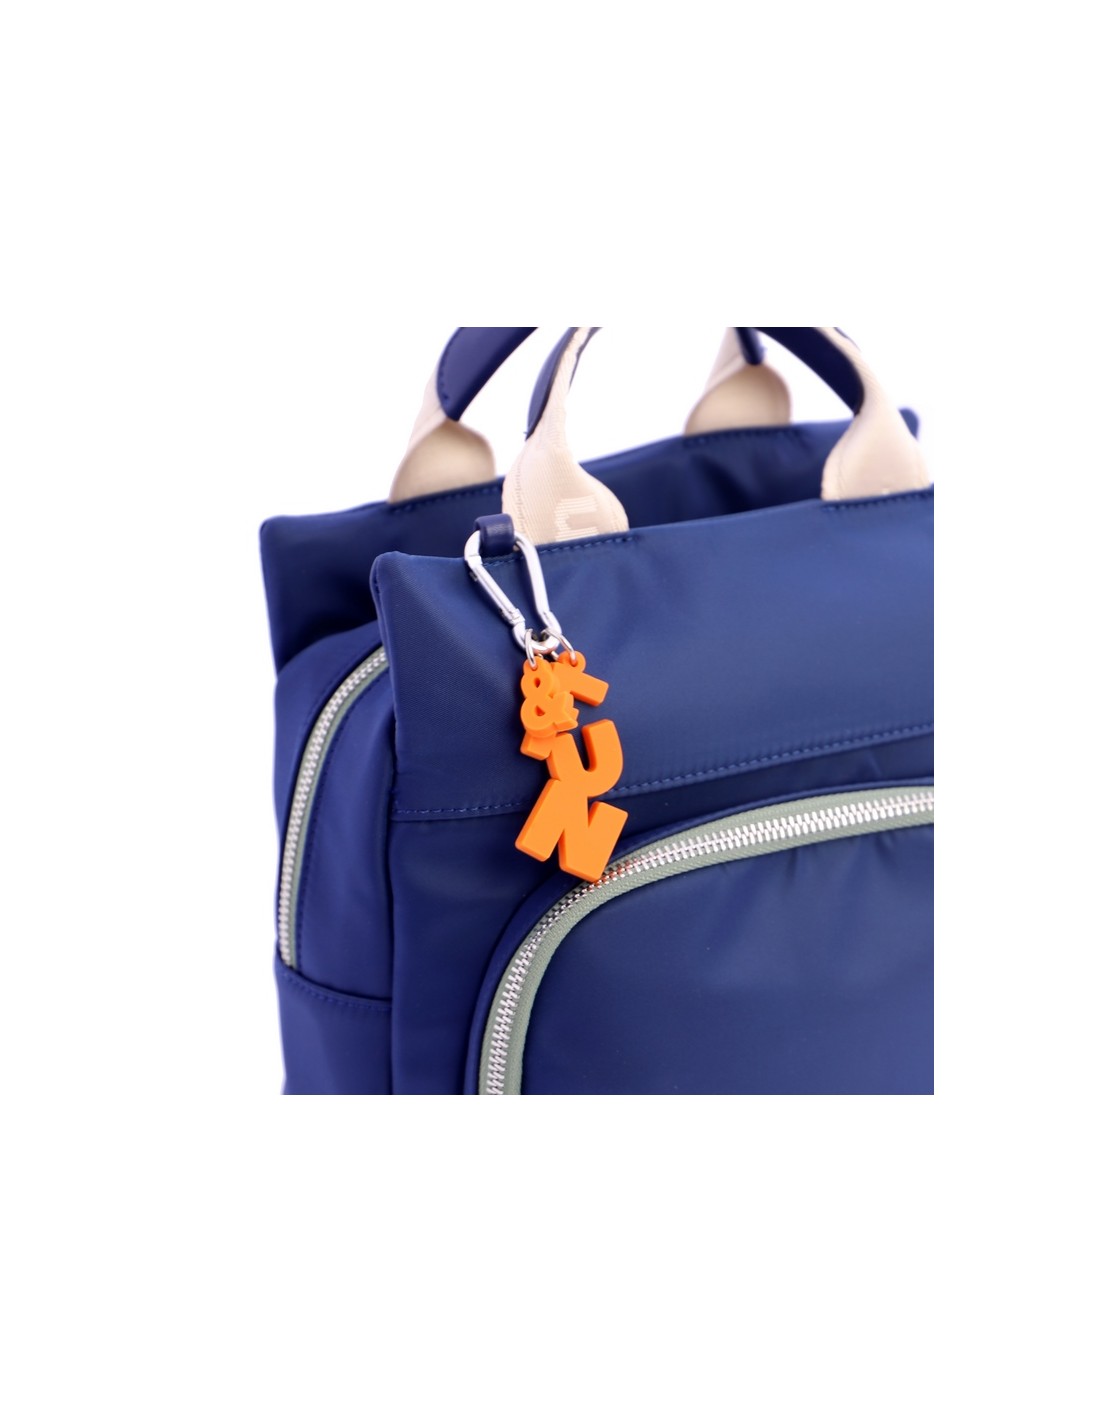 La nueva moda de las mochilas plegables: ¿Son tan prácticas como dicen?